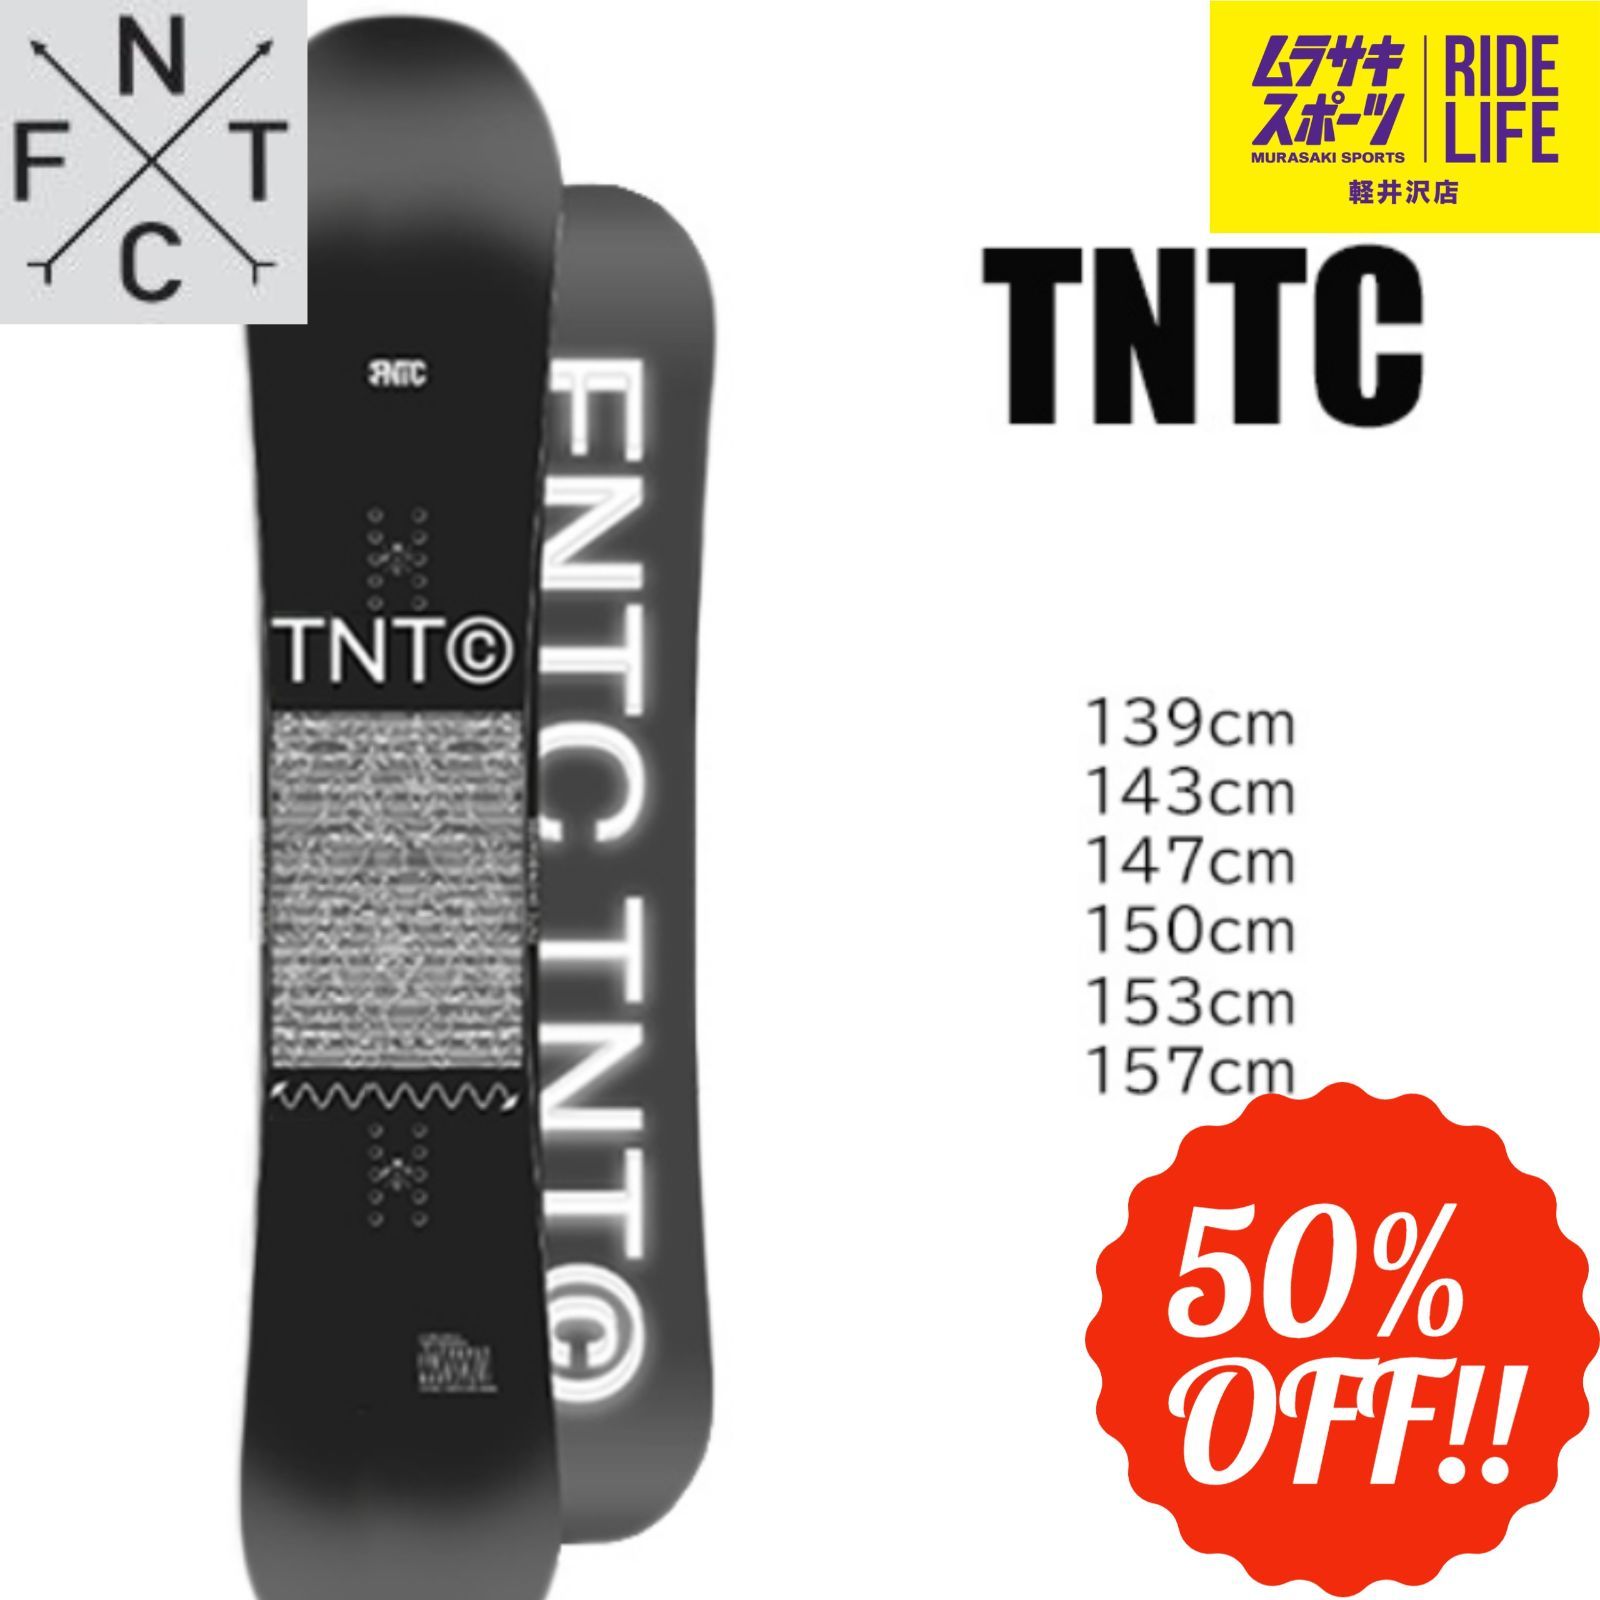 スノーボード FNTC TNTc 20-21 150cm | hartwellspremium.com